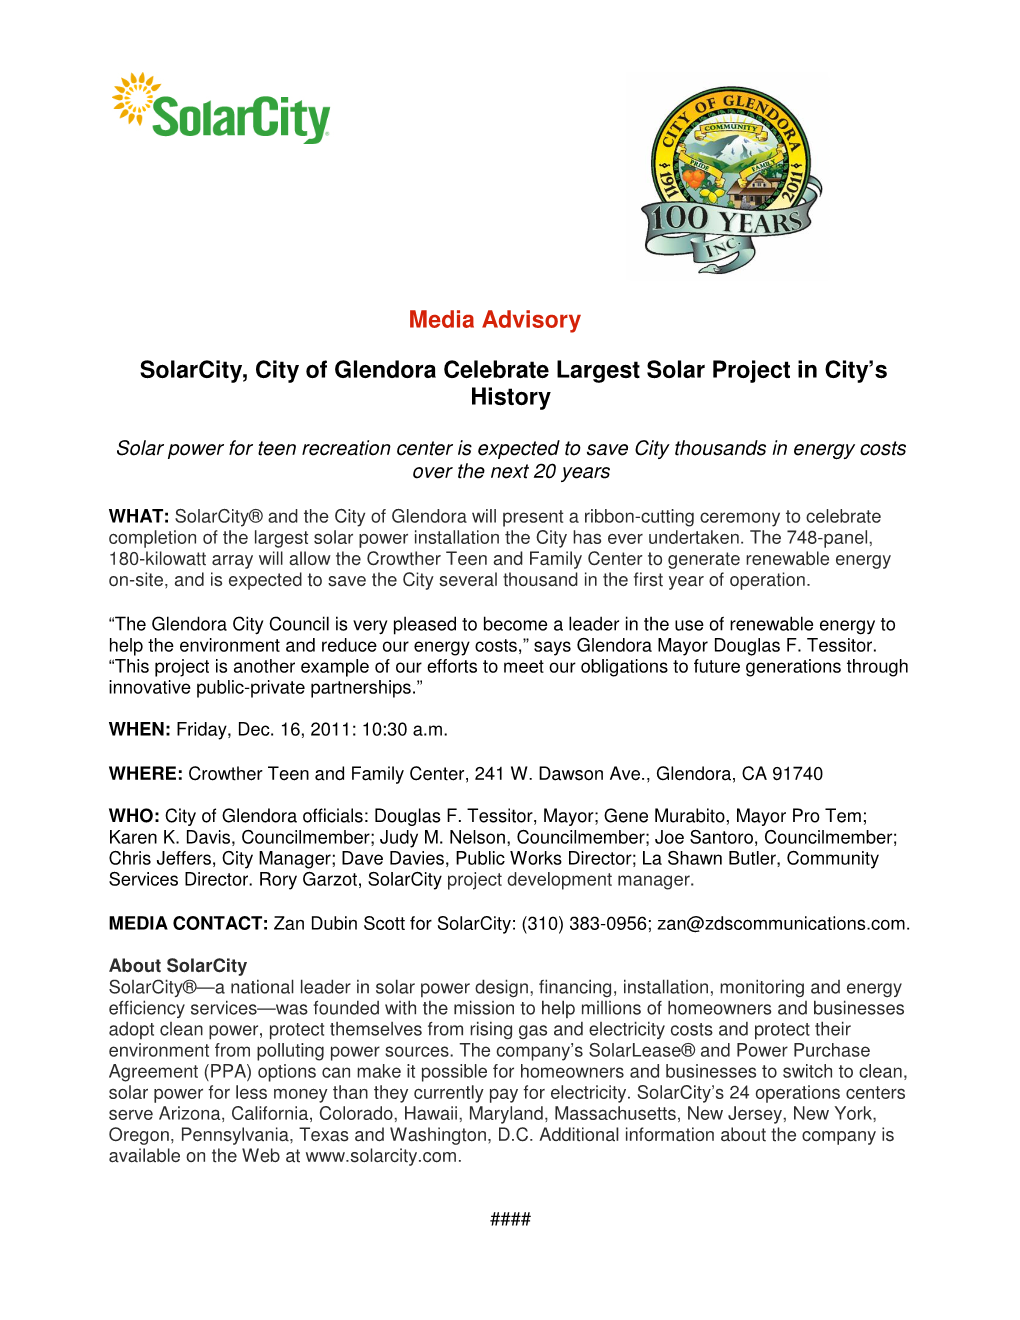 Media Advisory Solarcity, City of Glendora Celebrate Largest Solar